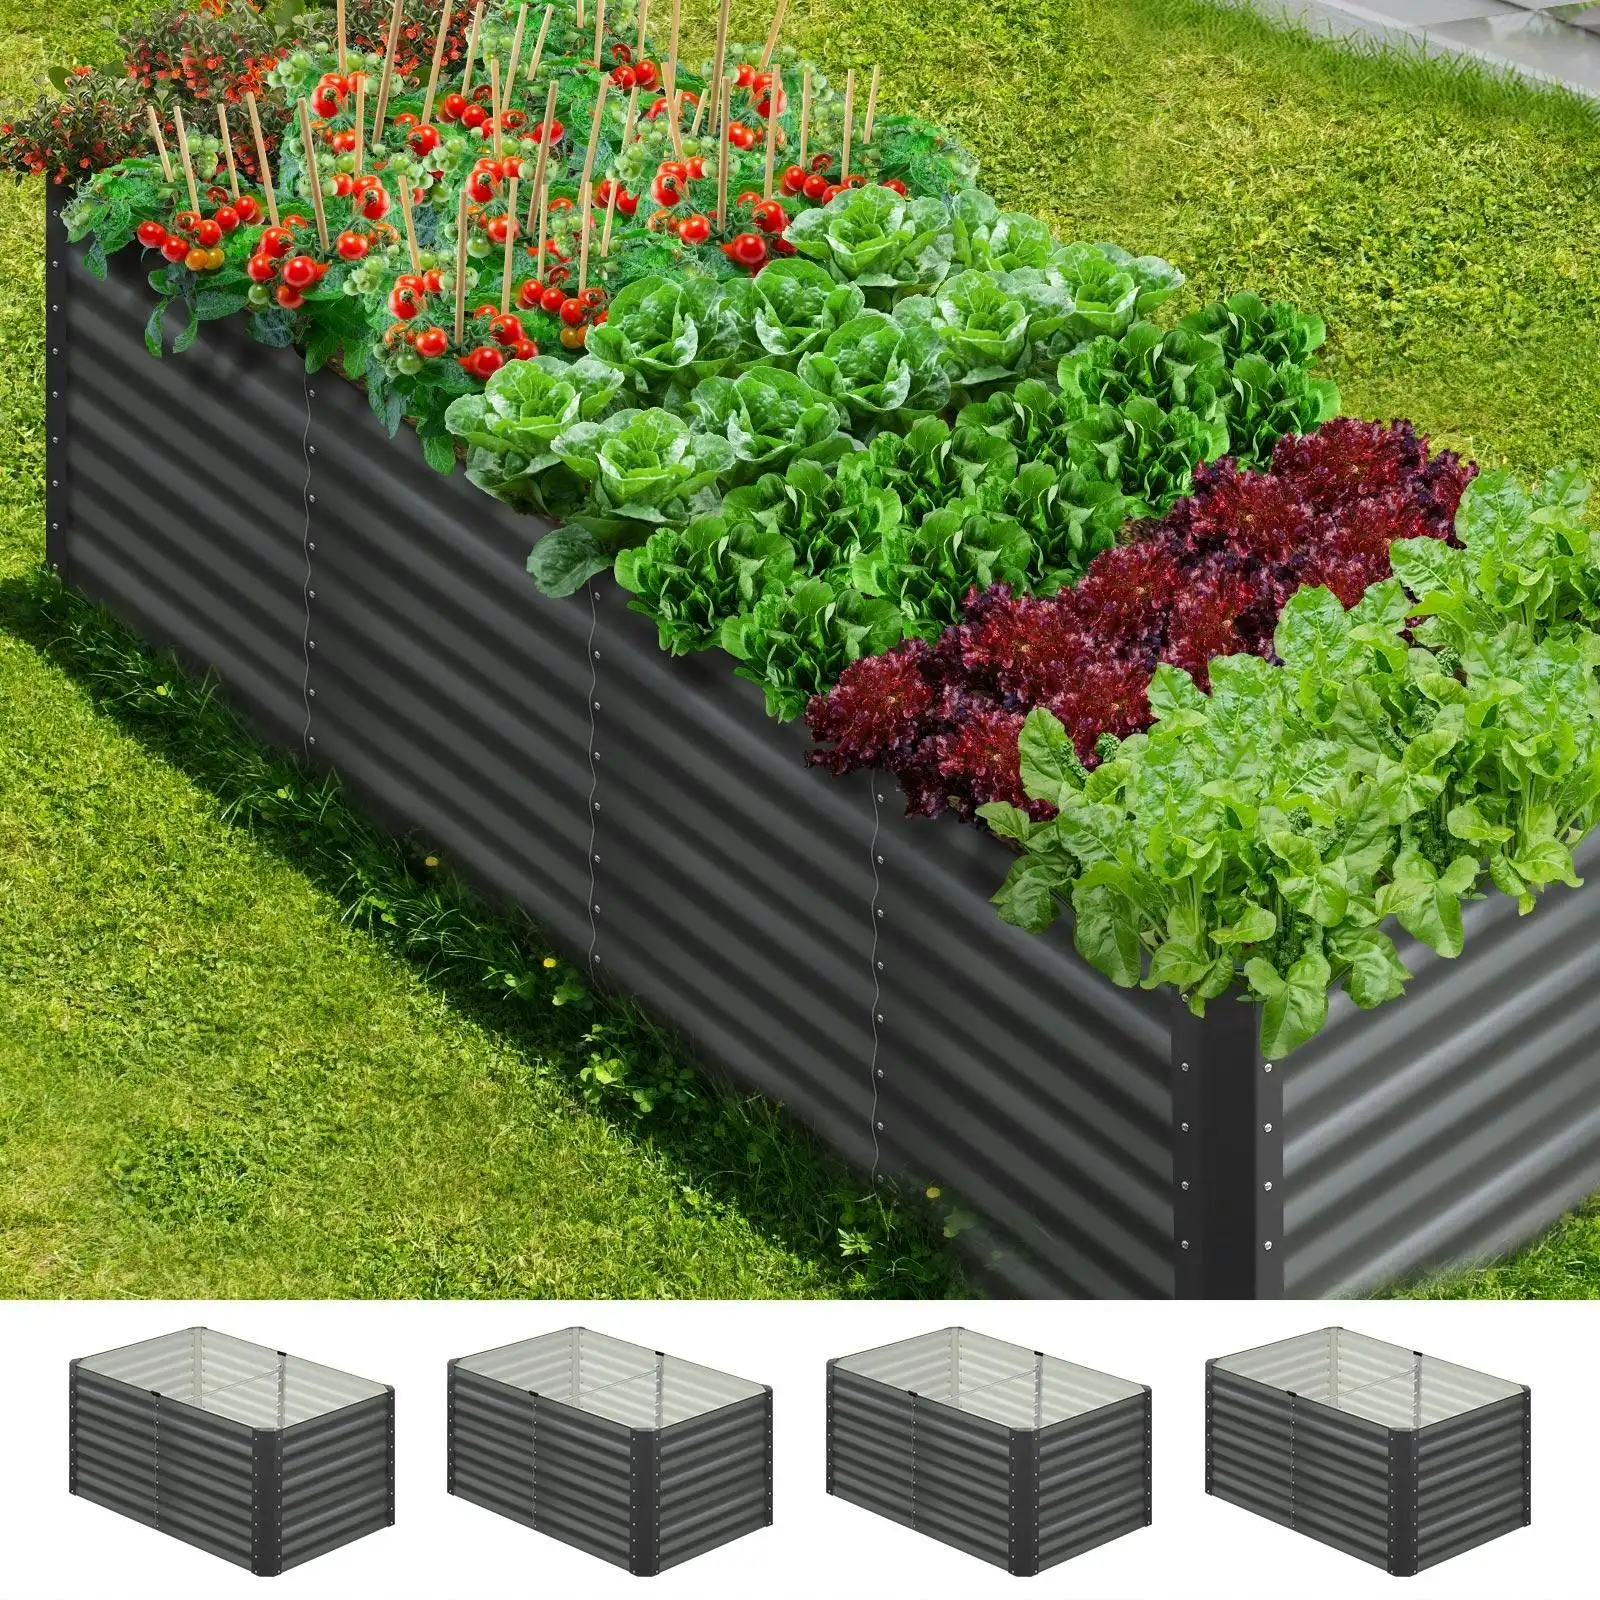 Livsip x2 Garden Bed Kits Raised Vegetable Planter Galvanised Steel 240x80x73CM